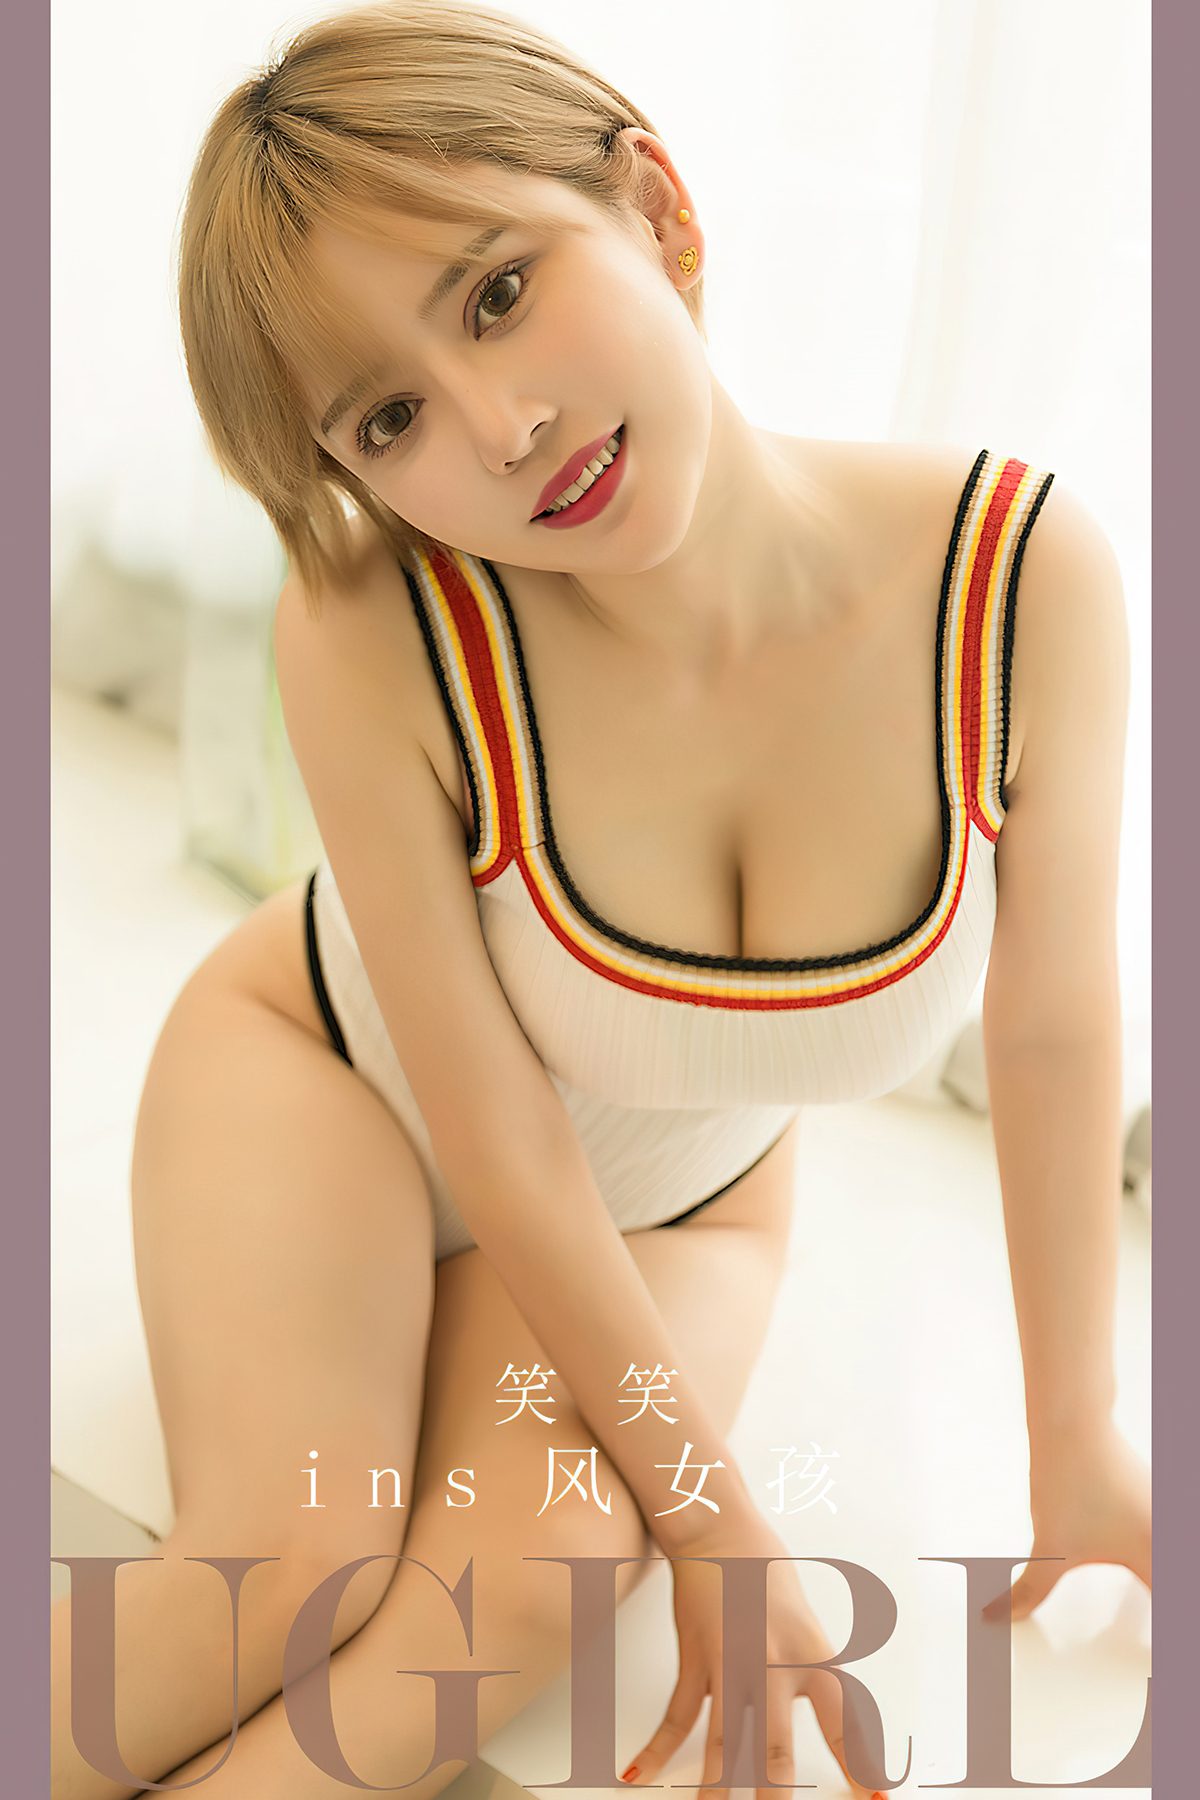 Ugirls App尤果圈 No 2700 Xiao Xiao 0010 7557890919.jpg